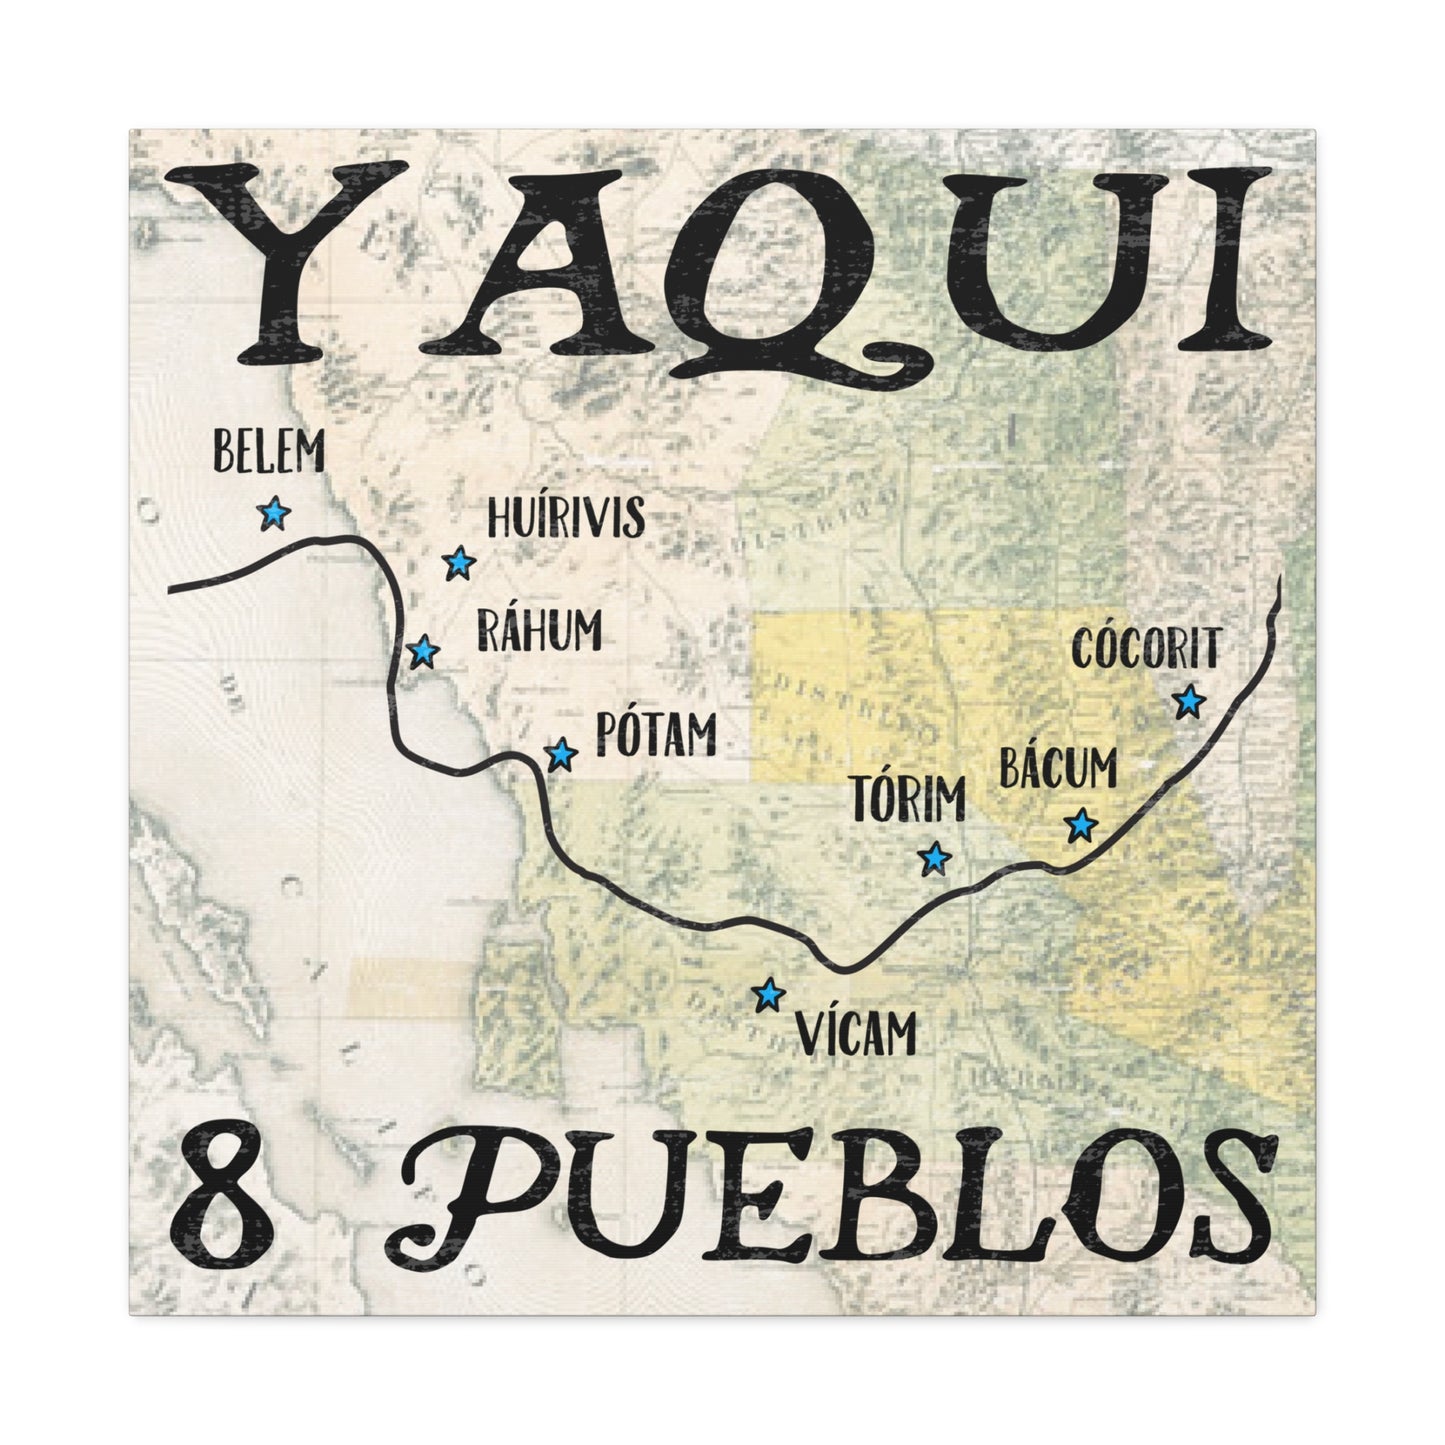 Okładka płótna Yaqui Pueblos 30 "X 30" rdzenni Amerykanie